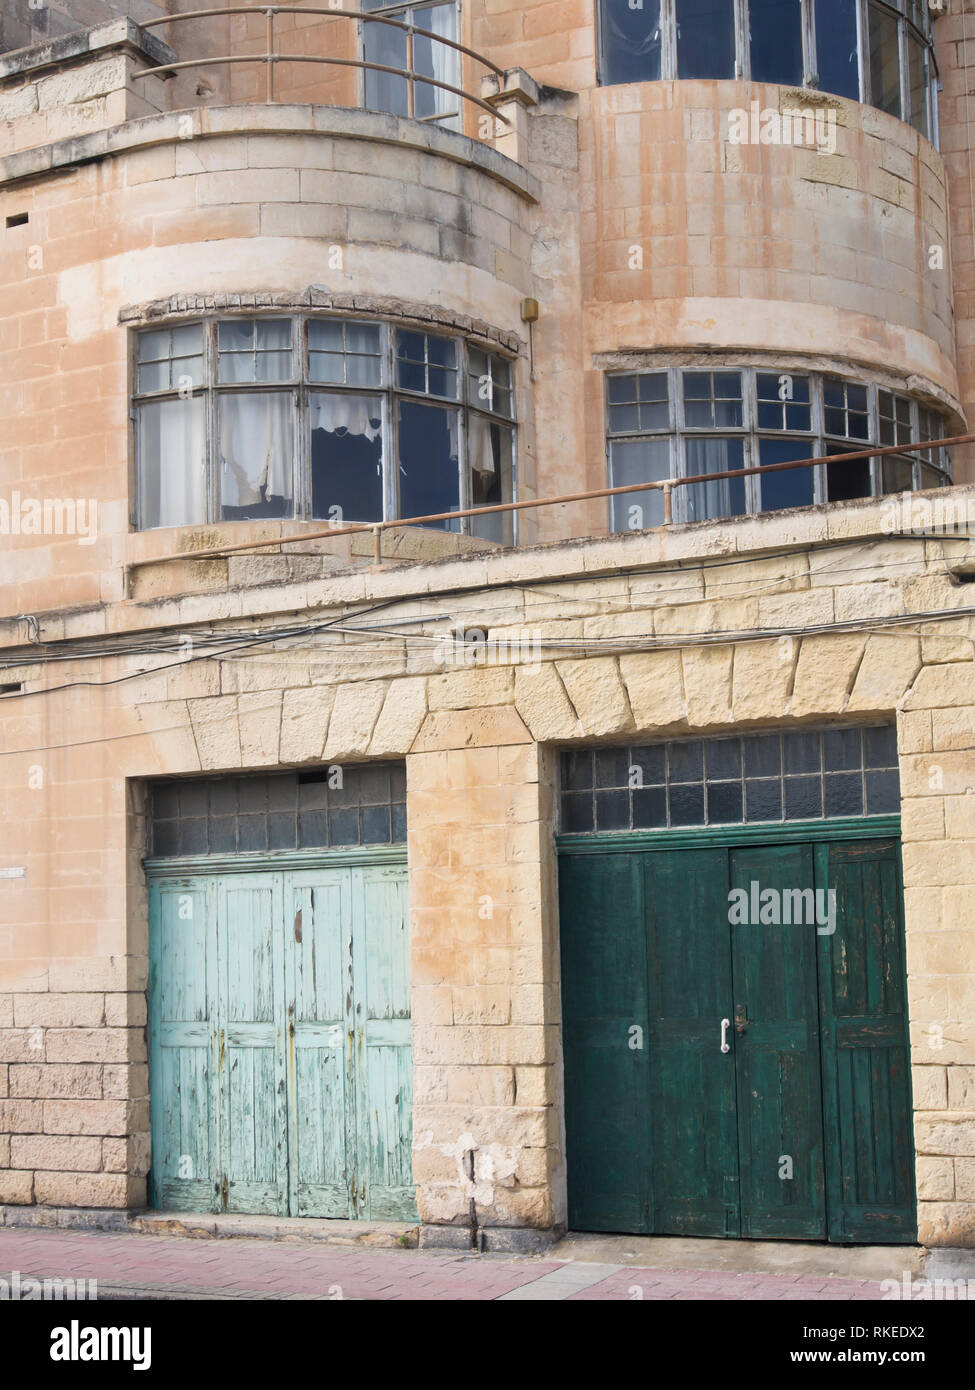 Place à l'amélioration, une façade de l'immeuble délabré sur la promenade de front de mer près de La Valette à Malte Banque D'Images